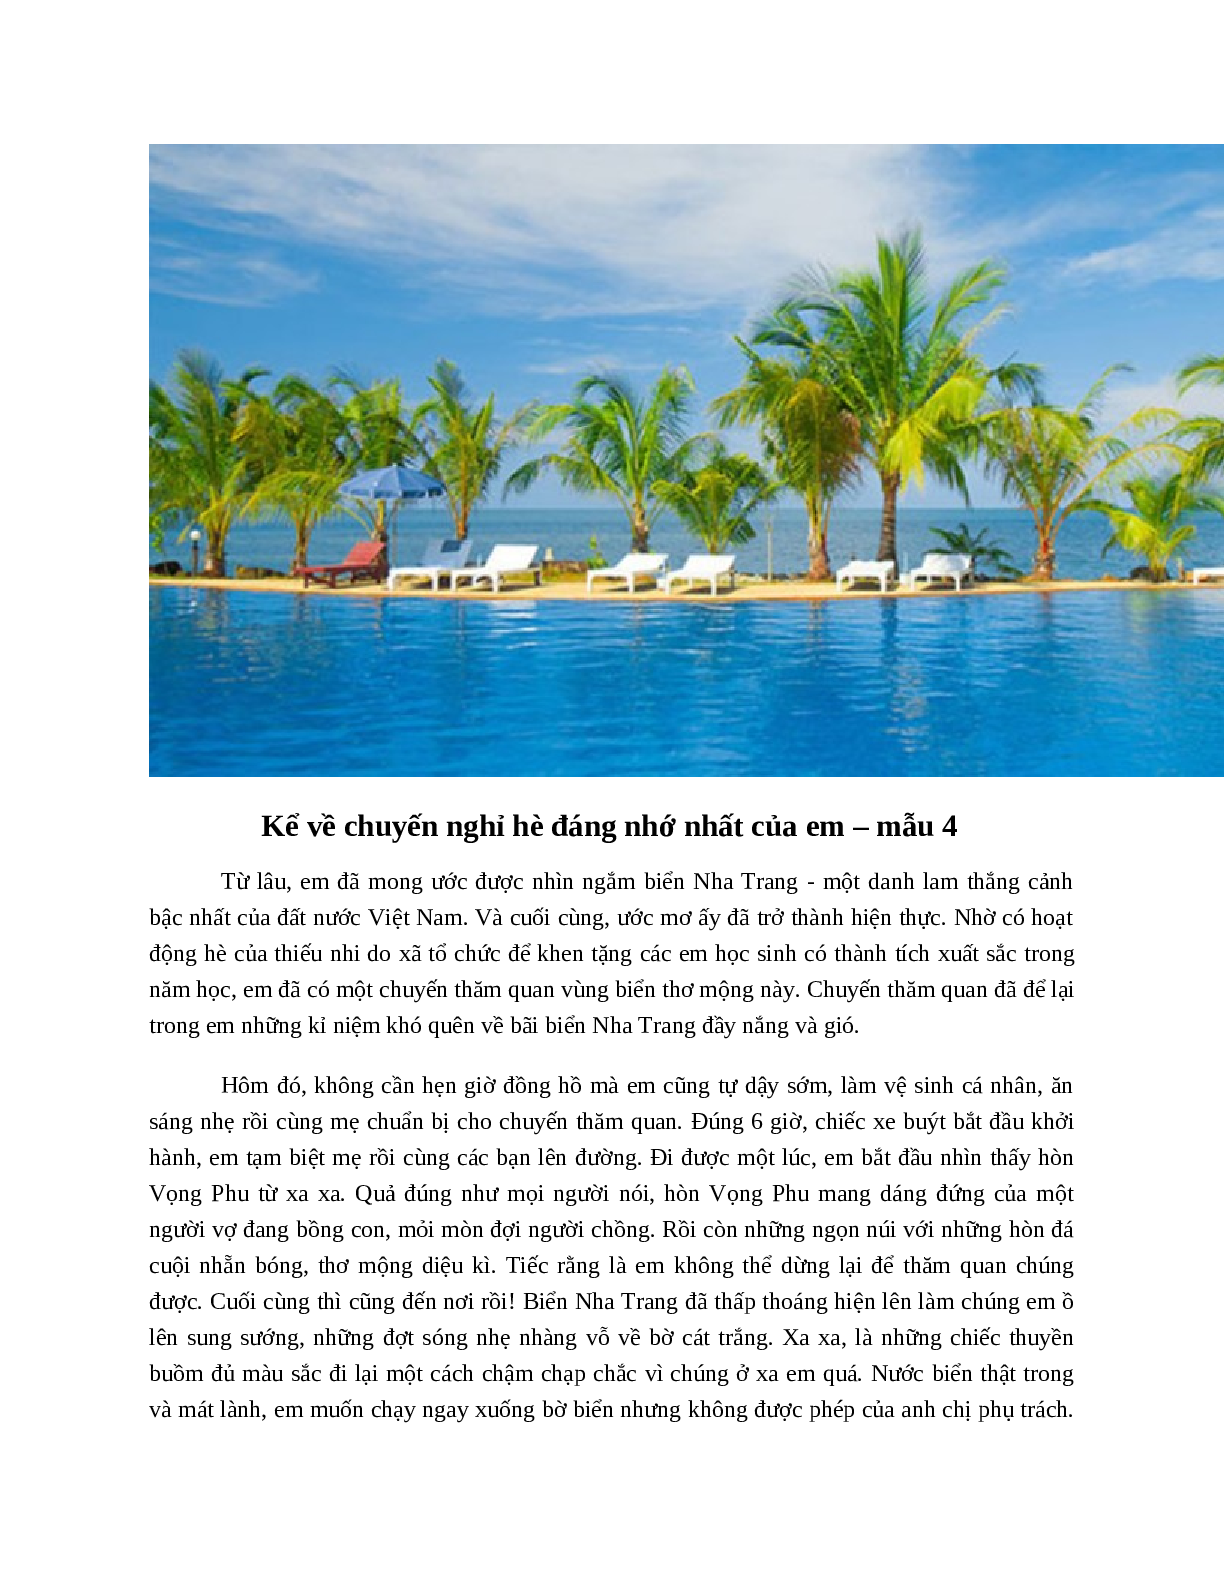 Kể về chuyến nghỉ hè đáng nhớ nhất của em hay nhất (9 mẫu) (trang 7)